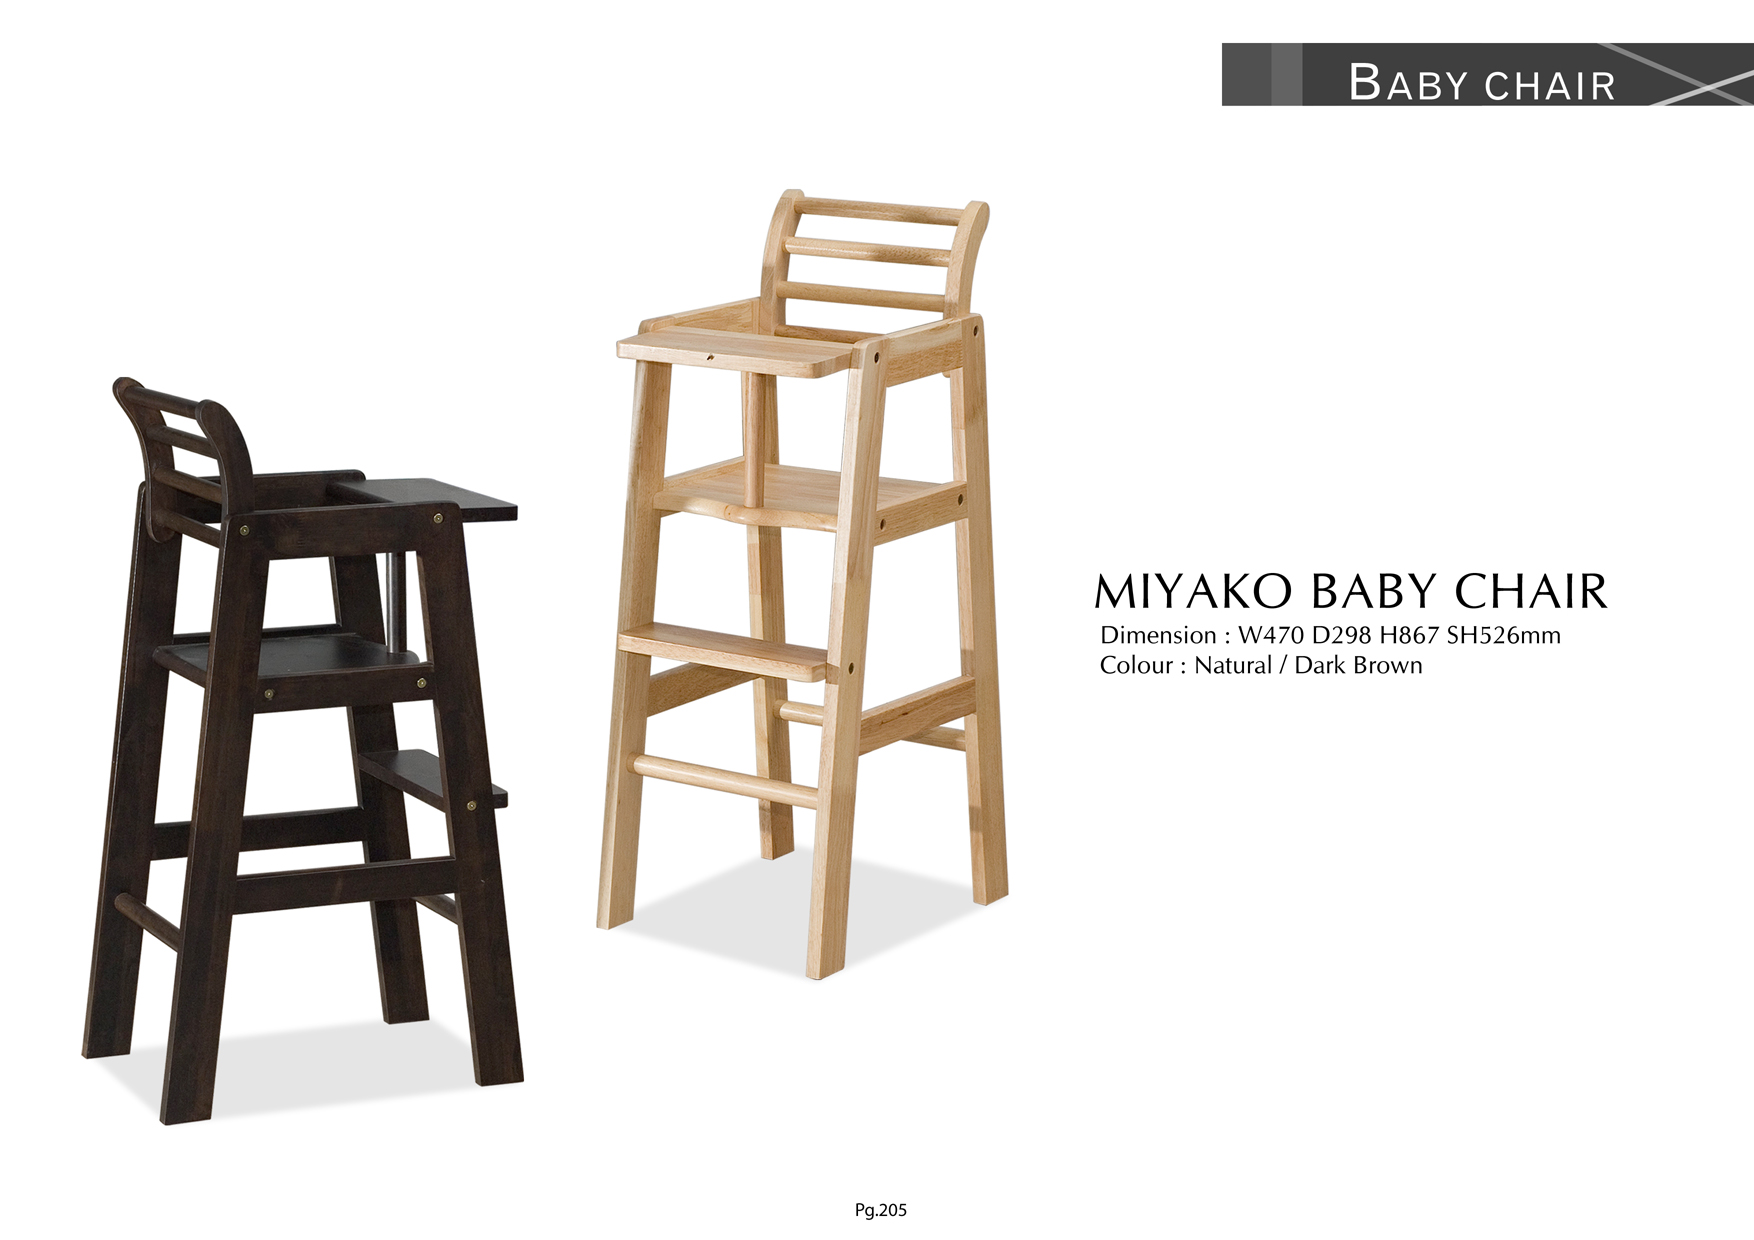 Product: PG205. MIYAKO BABY CHAIR